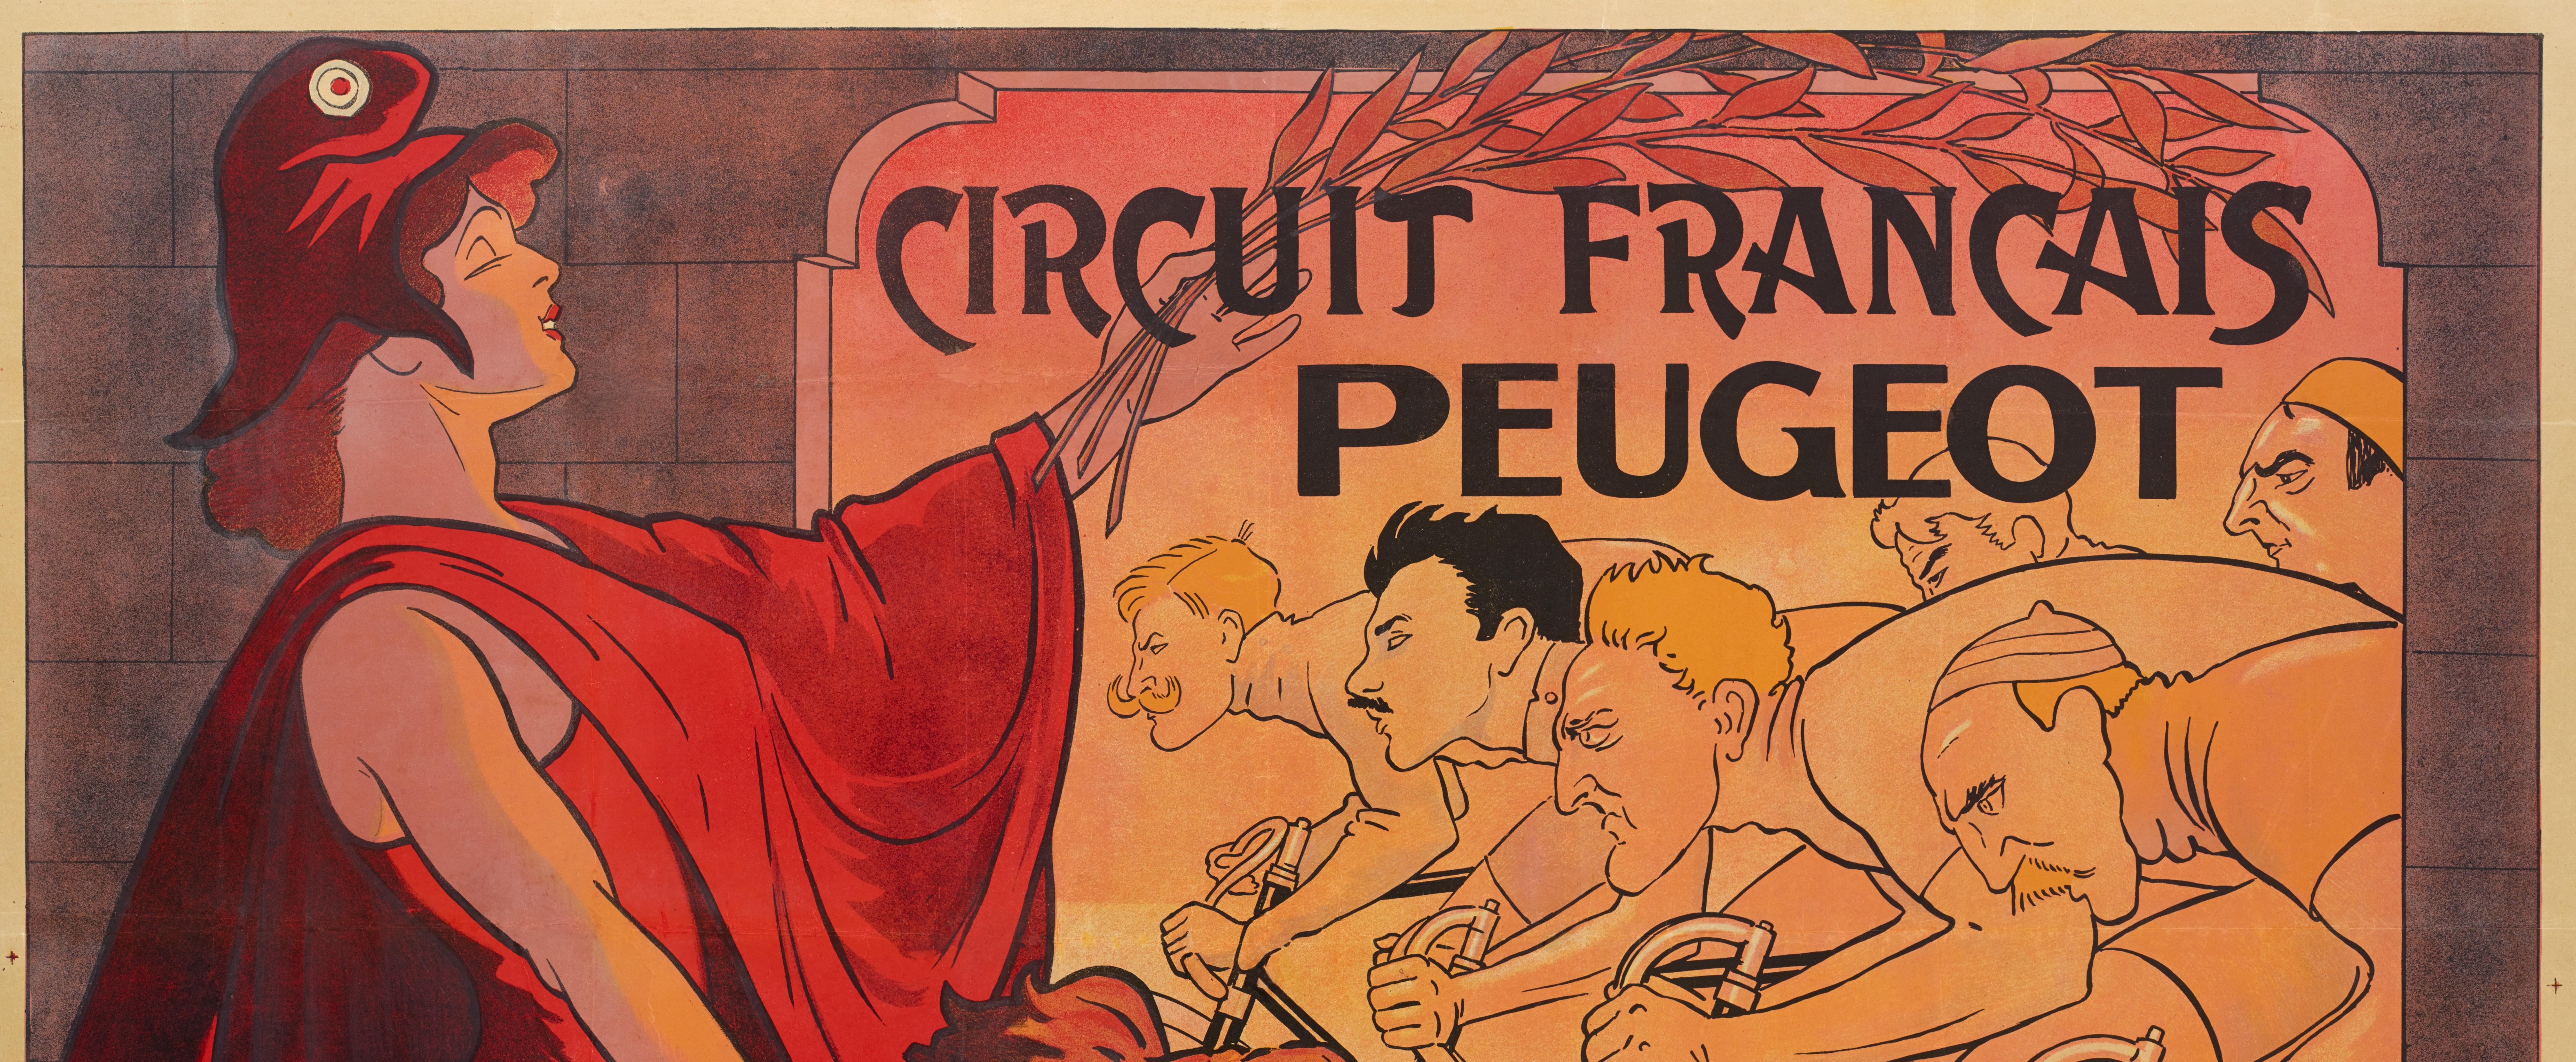 Original Vintage Poster for Circuit Francais Peugeot created by Mich in 1911.

Artist: Mich (1881-1923)
Title: Circuit Français Peugeot
Date: 1911
Size: 63 x 46.9 in. / 160 x 119 cm.
Printer : Imp L. Revon et Cie, 93 rue Oberkampf,